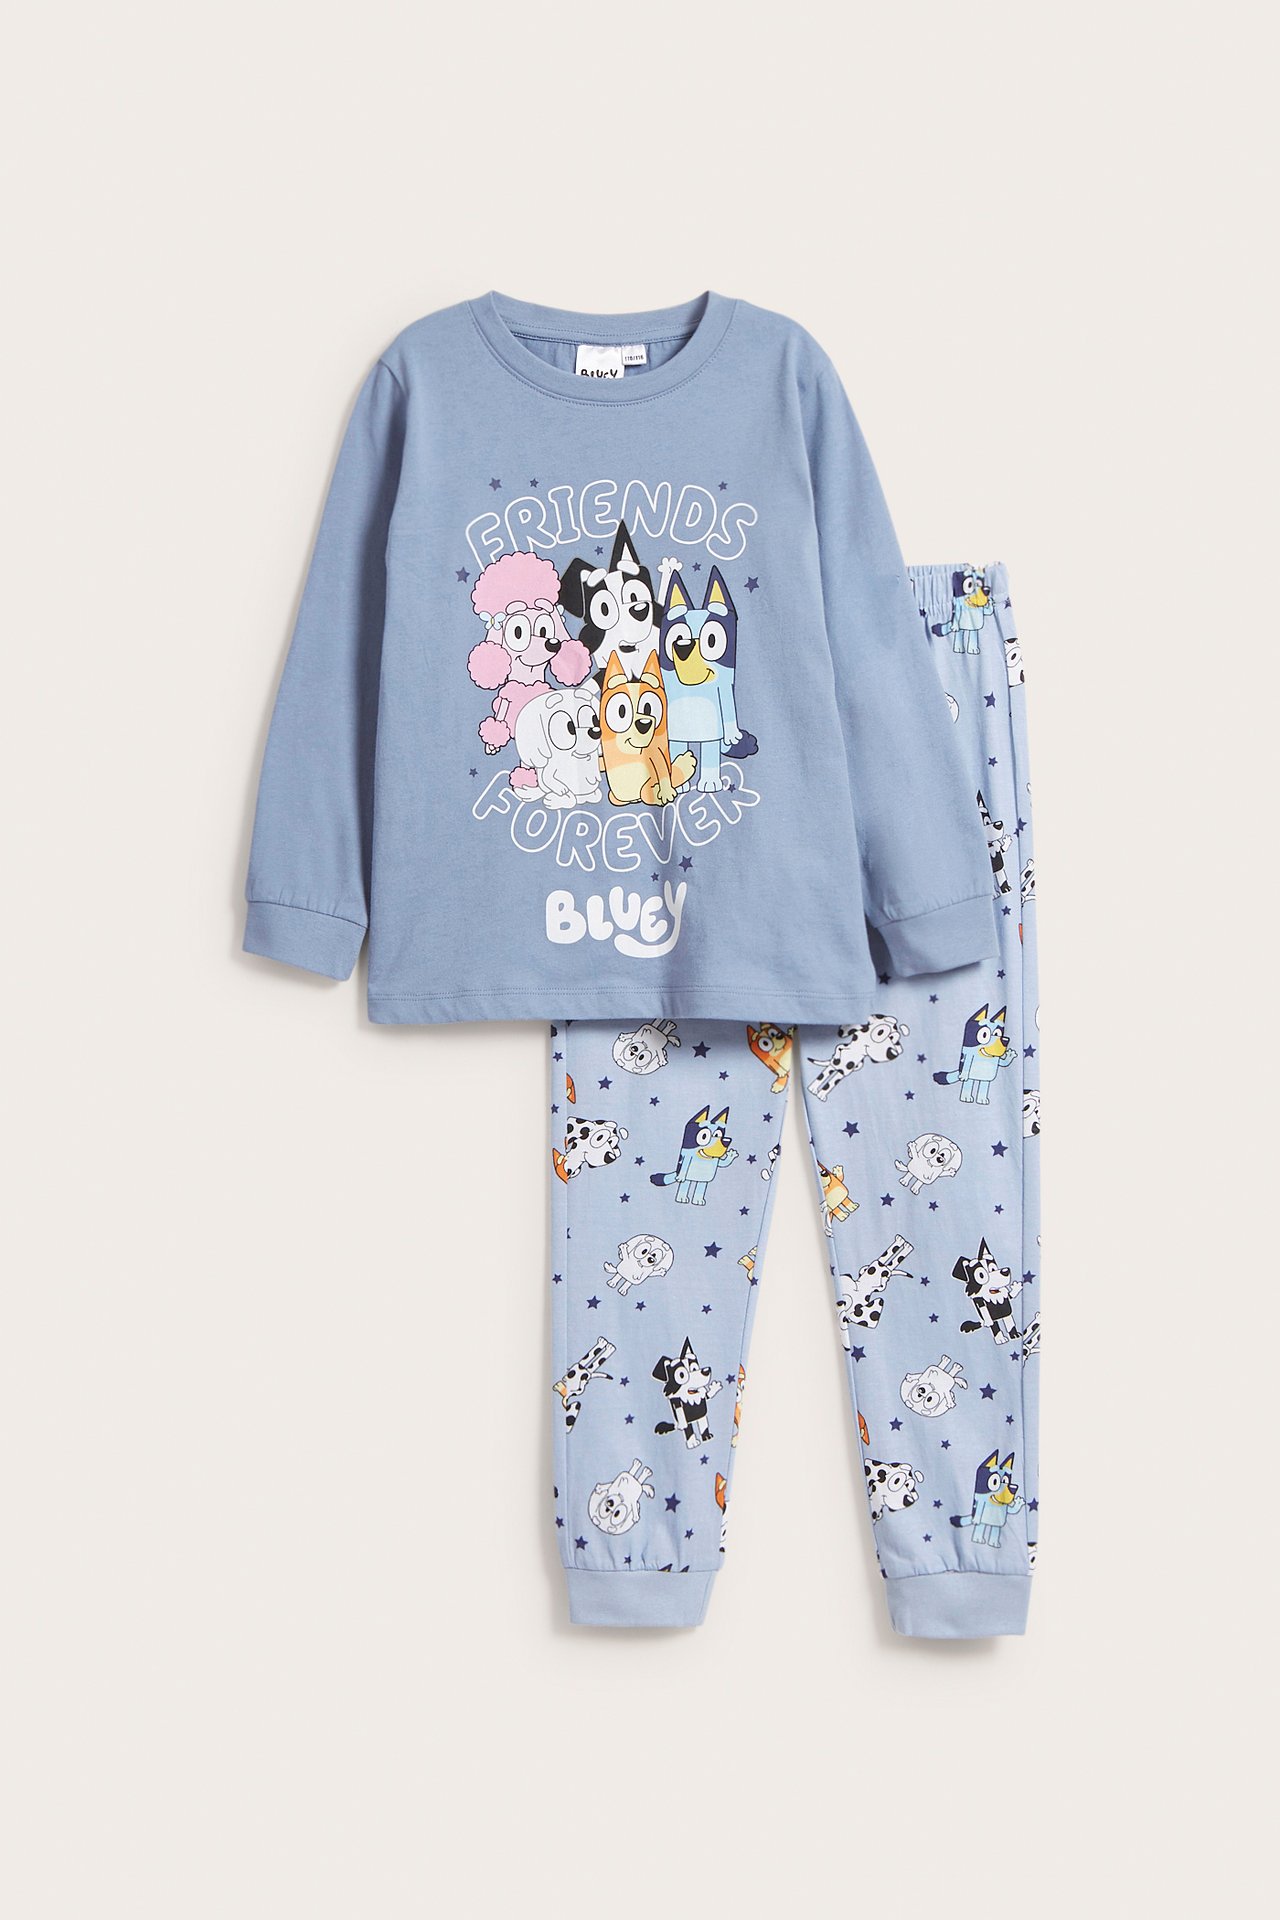 Bluey-pyjama